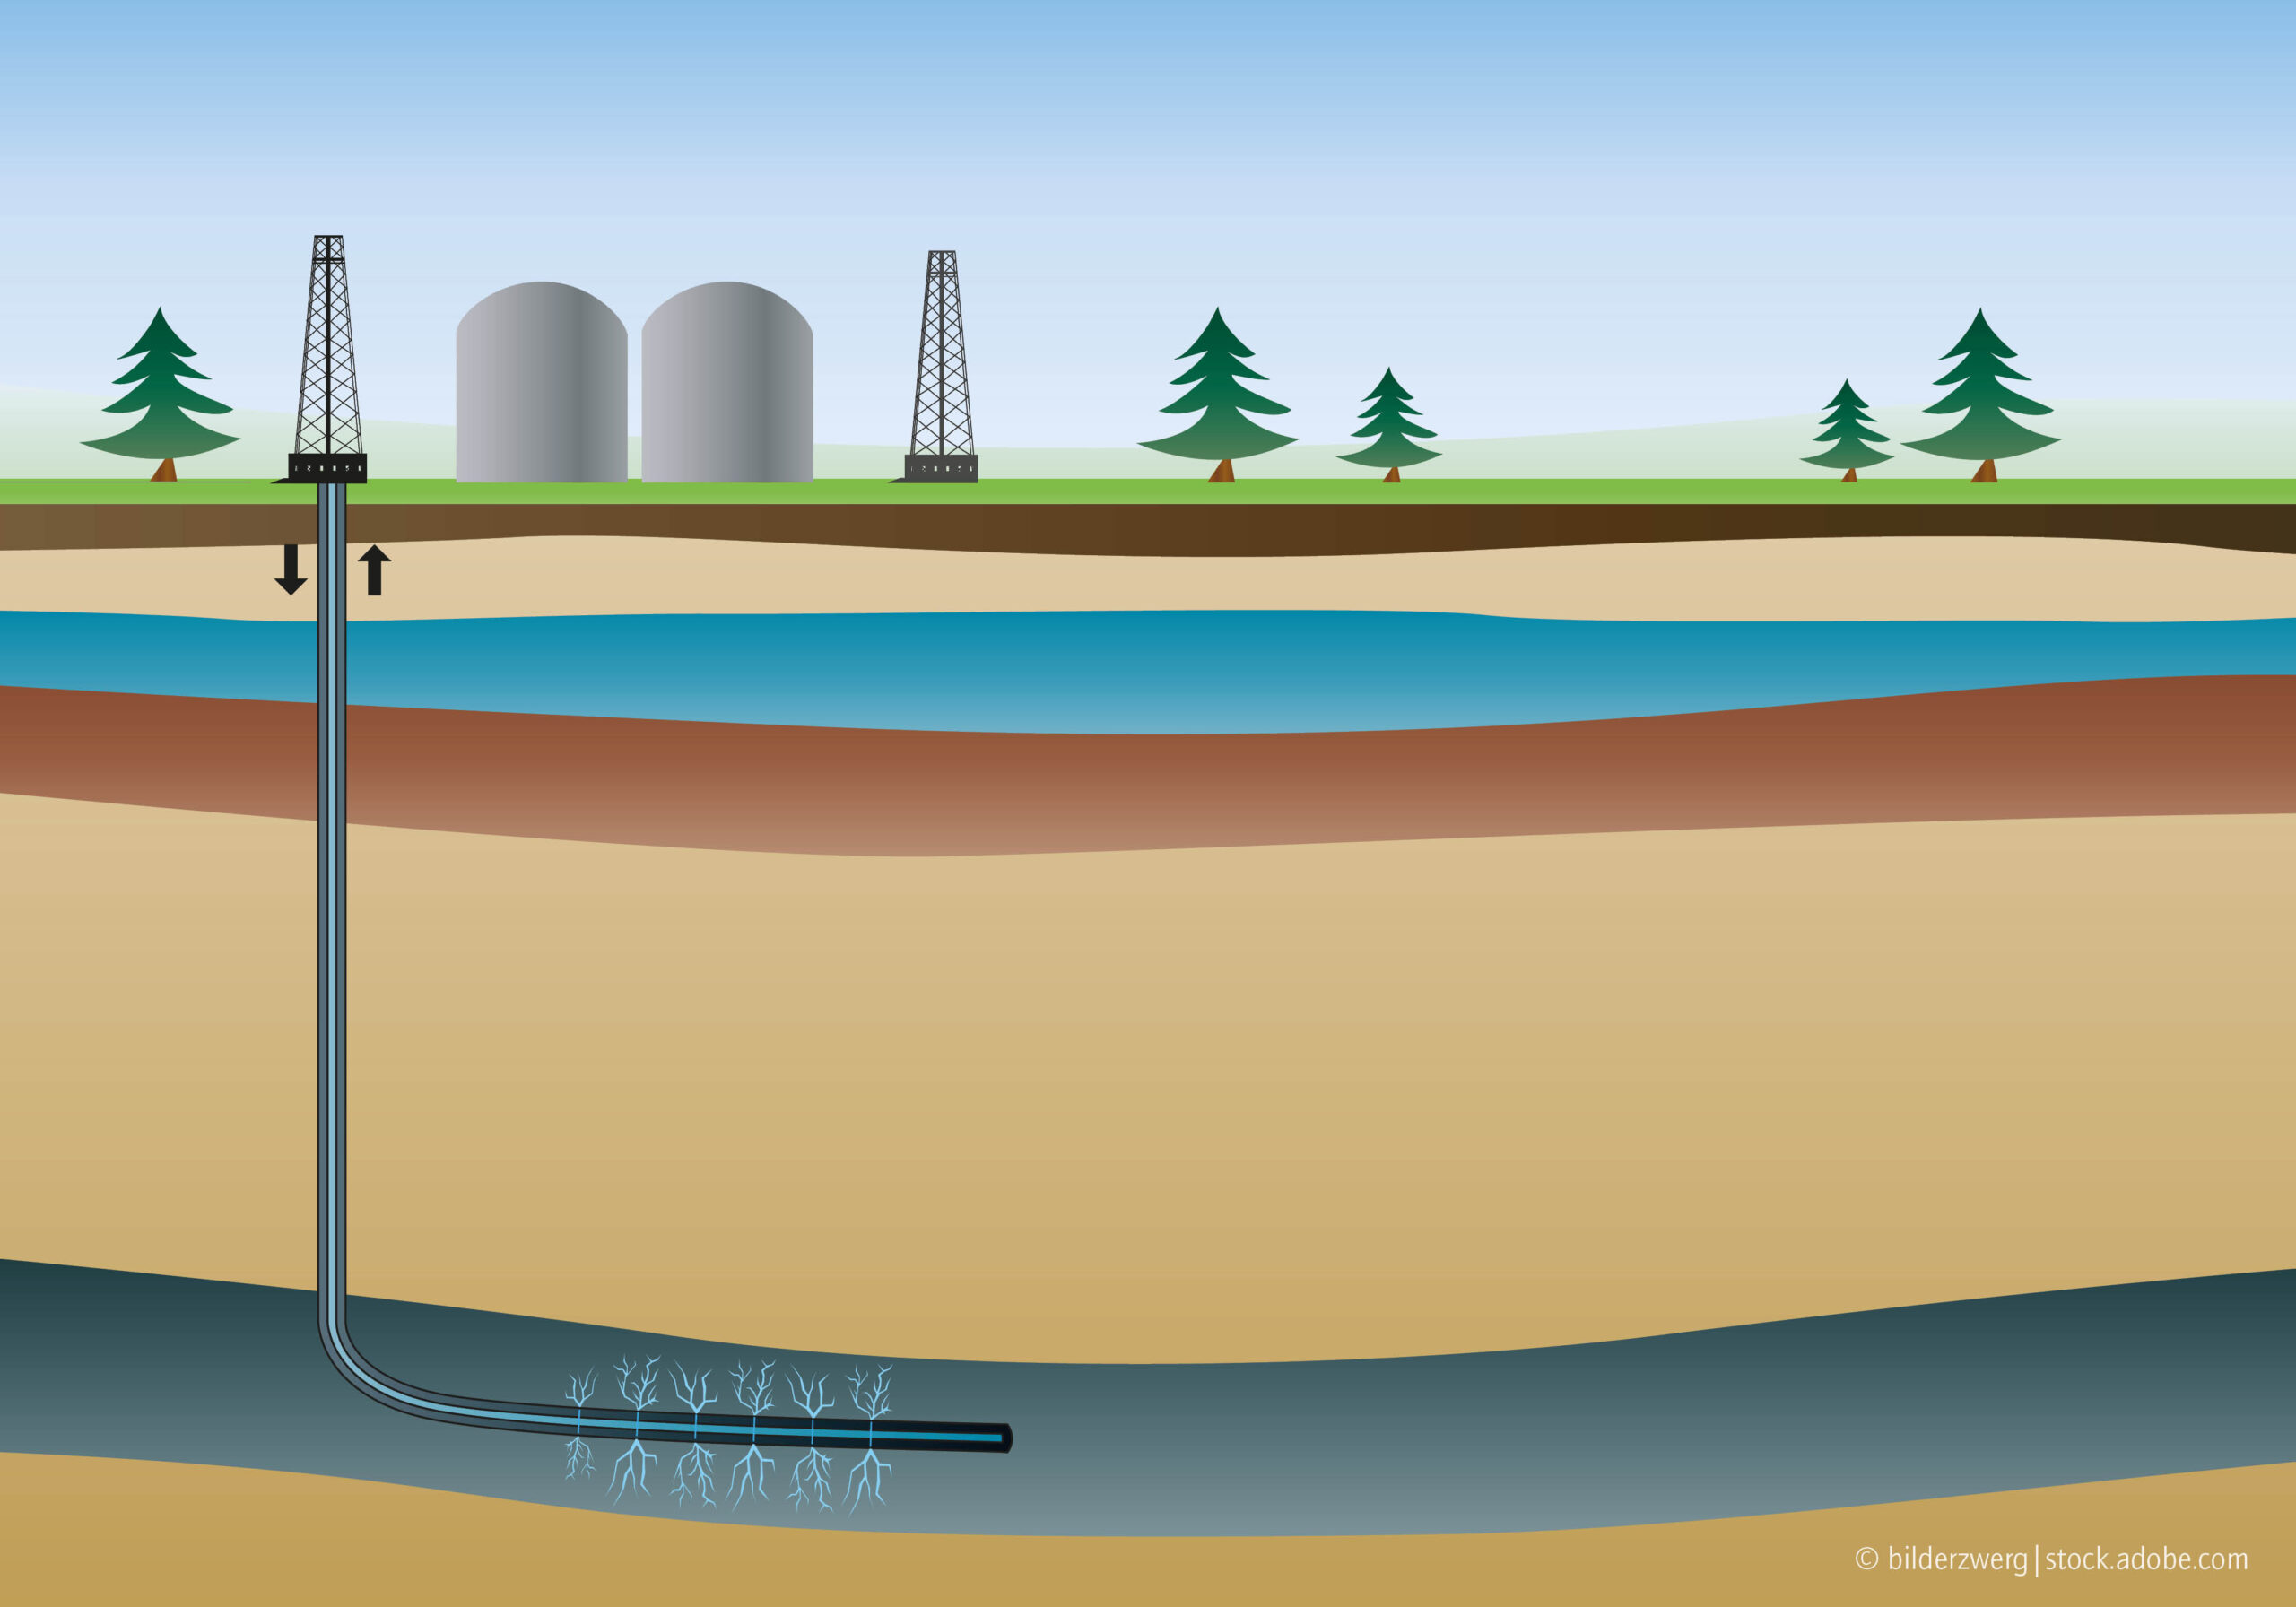 Das Bild zeigt eine schematische Abbildung einer Fracking-Anlage.